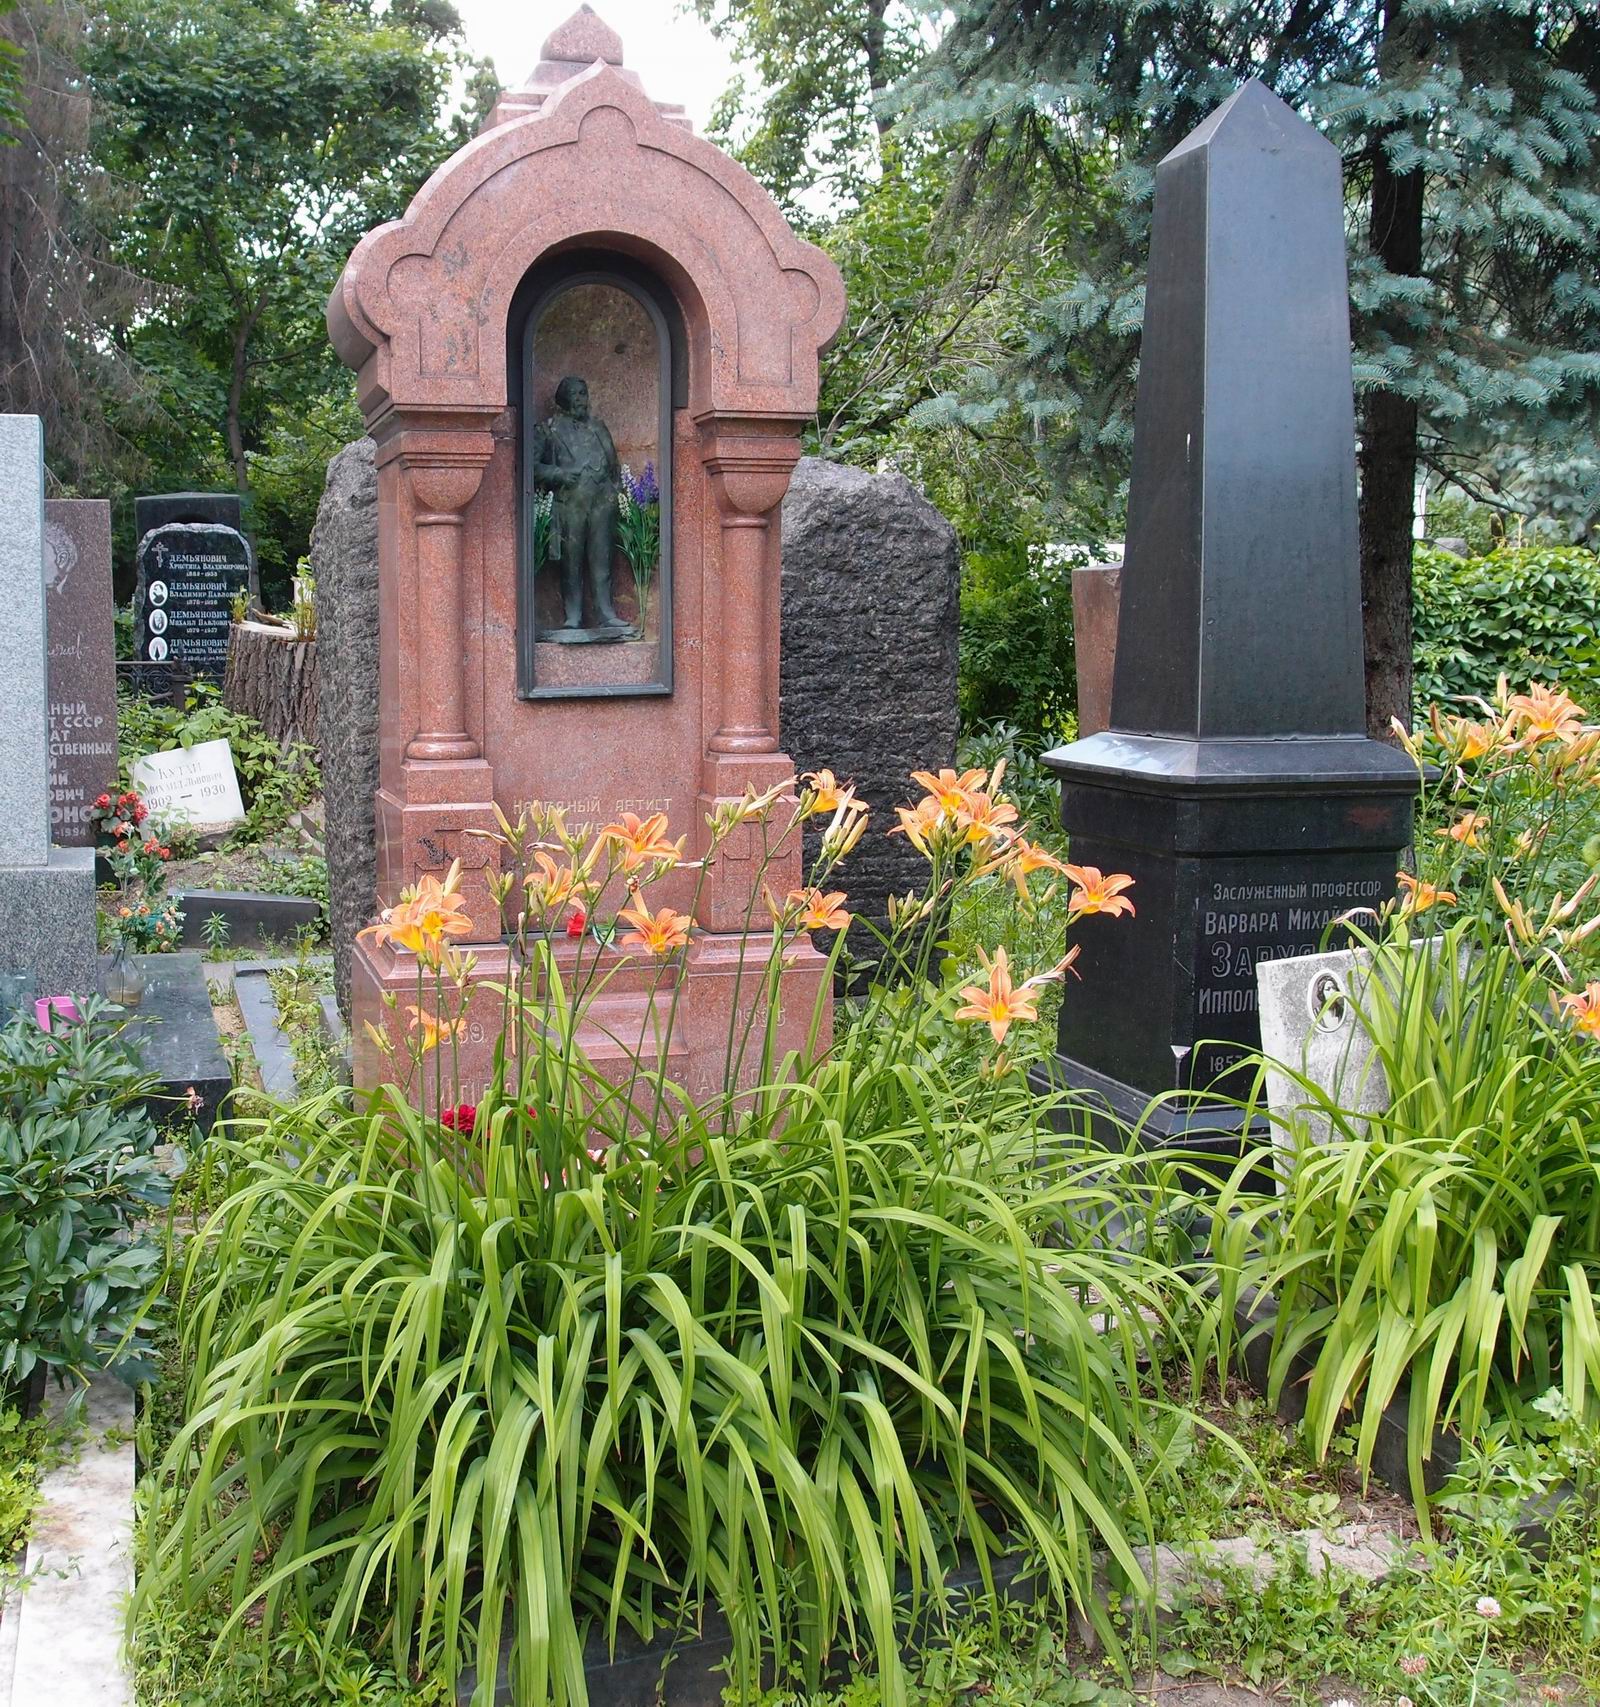 Памятник на могиле Ипполитова-Иванова М.М. (1859-1935), ск. С.Меркуров, на Новодевичьем кладбище (2-21а-7). Нажмите левую кнопку мыши, чтобы увидеть фрагмент памятника крупно.